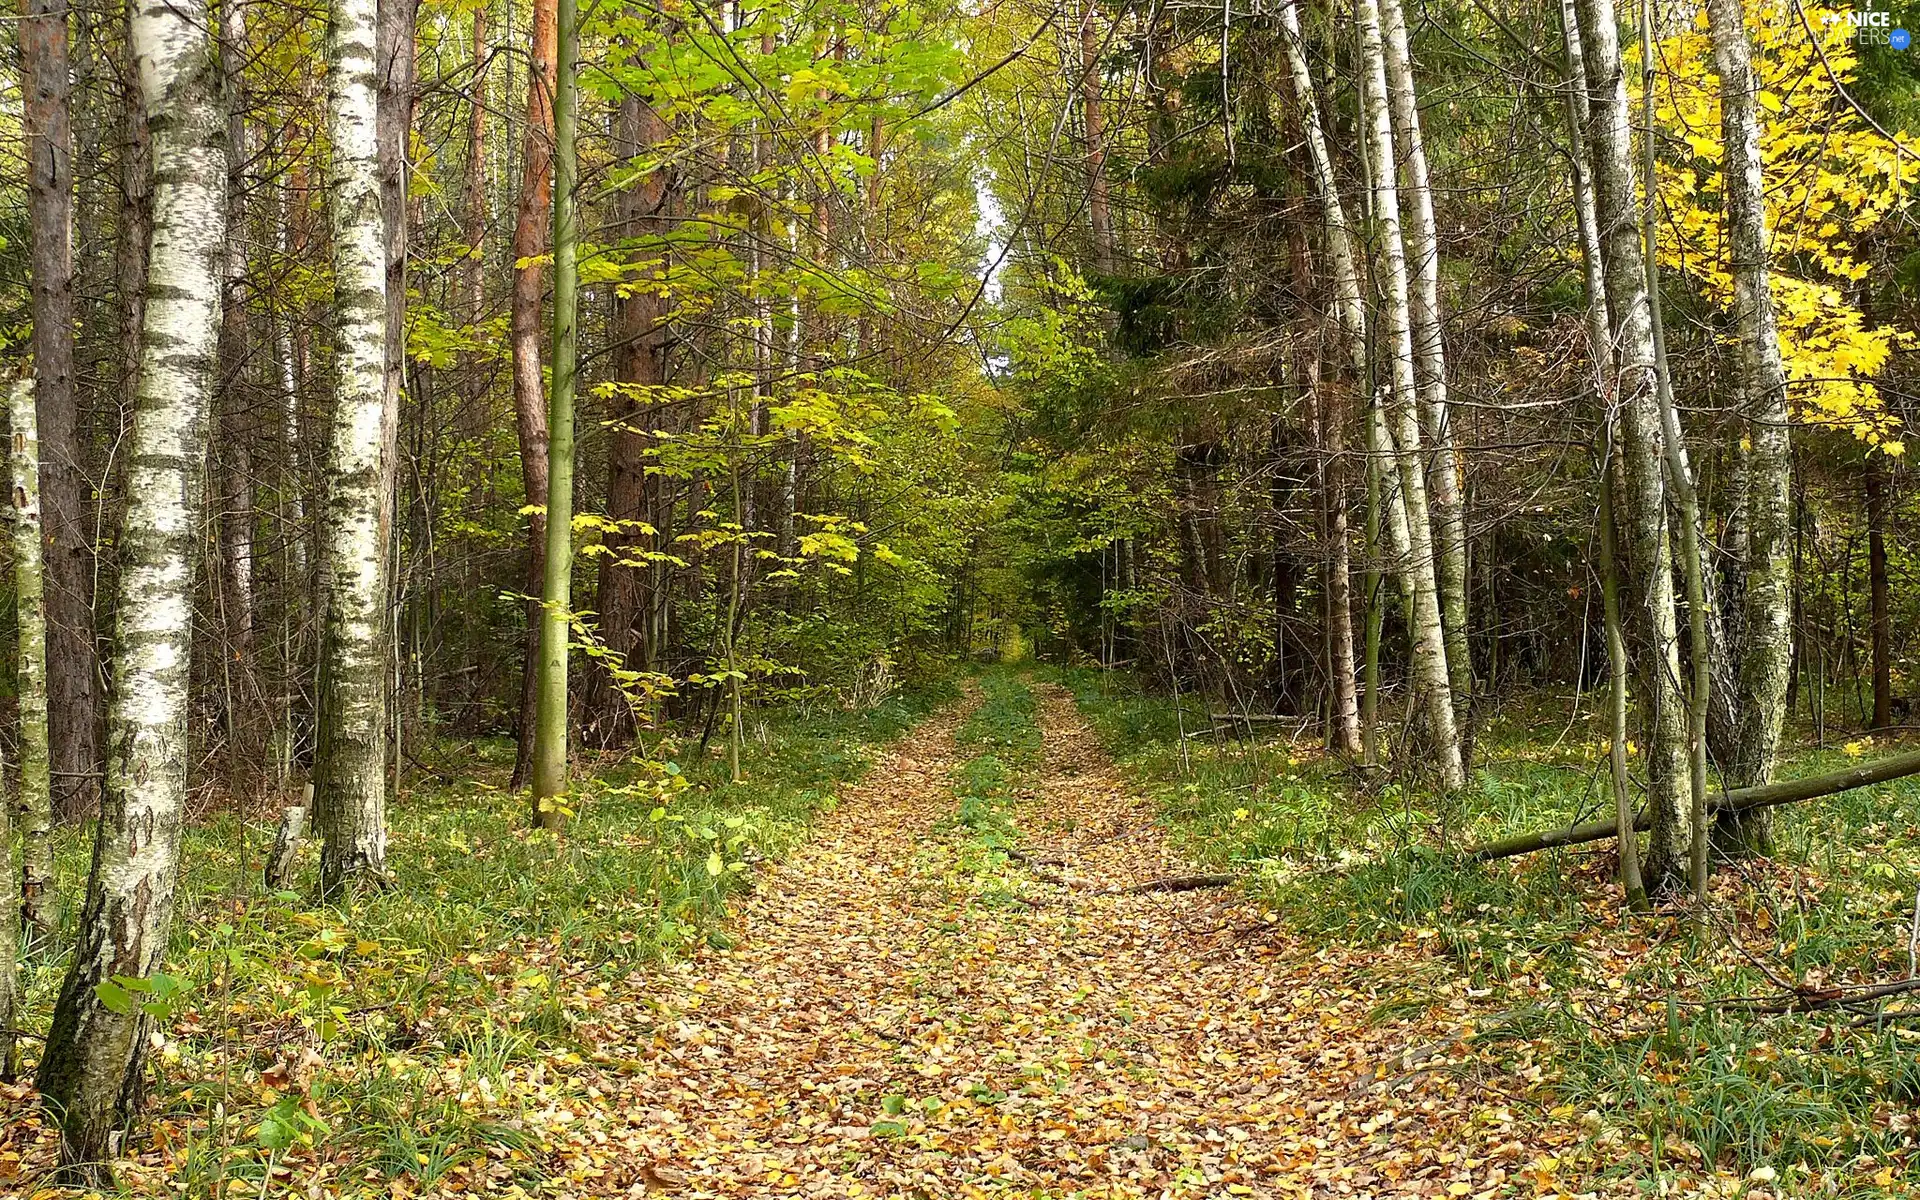 Leaf, autumn, Way, birch, forest